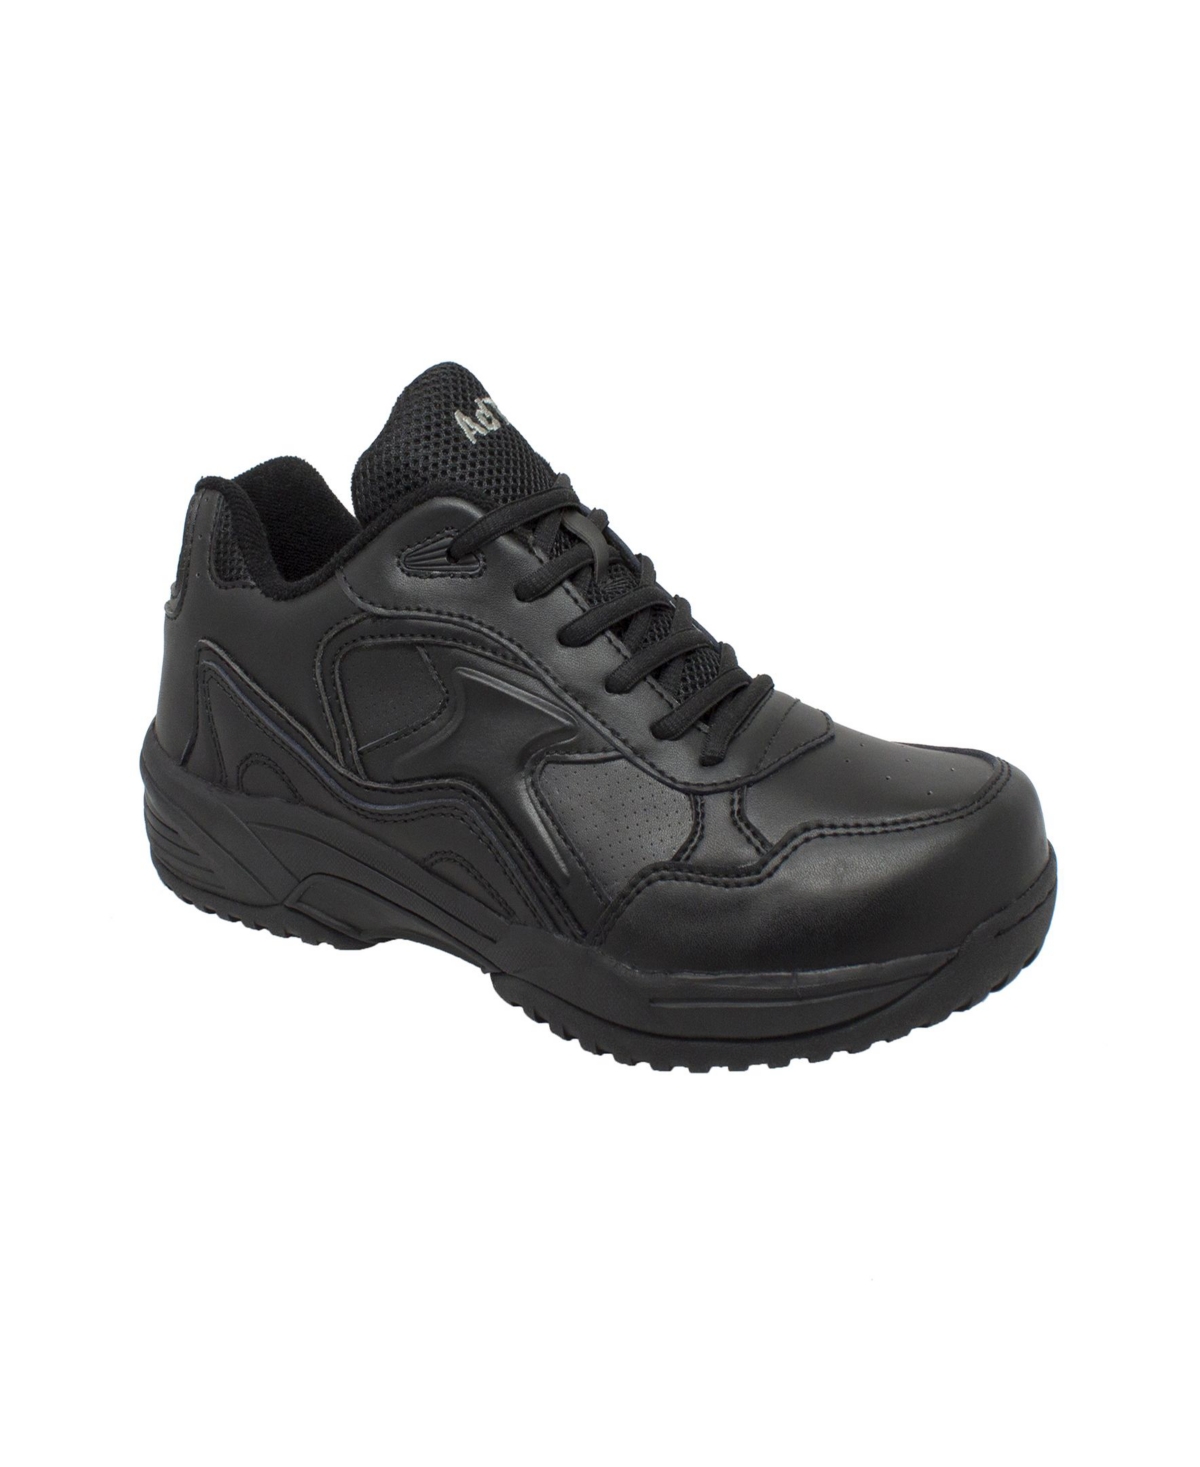 AdTec Men's Composite Toe Uniform Athletic Boot Men's Shoes